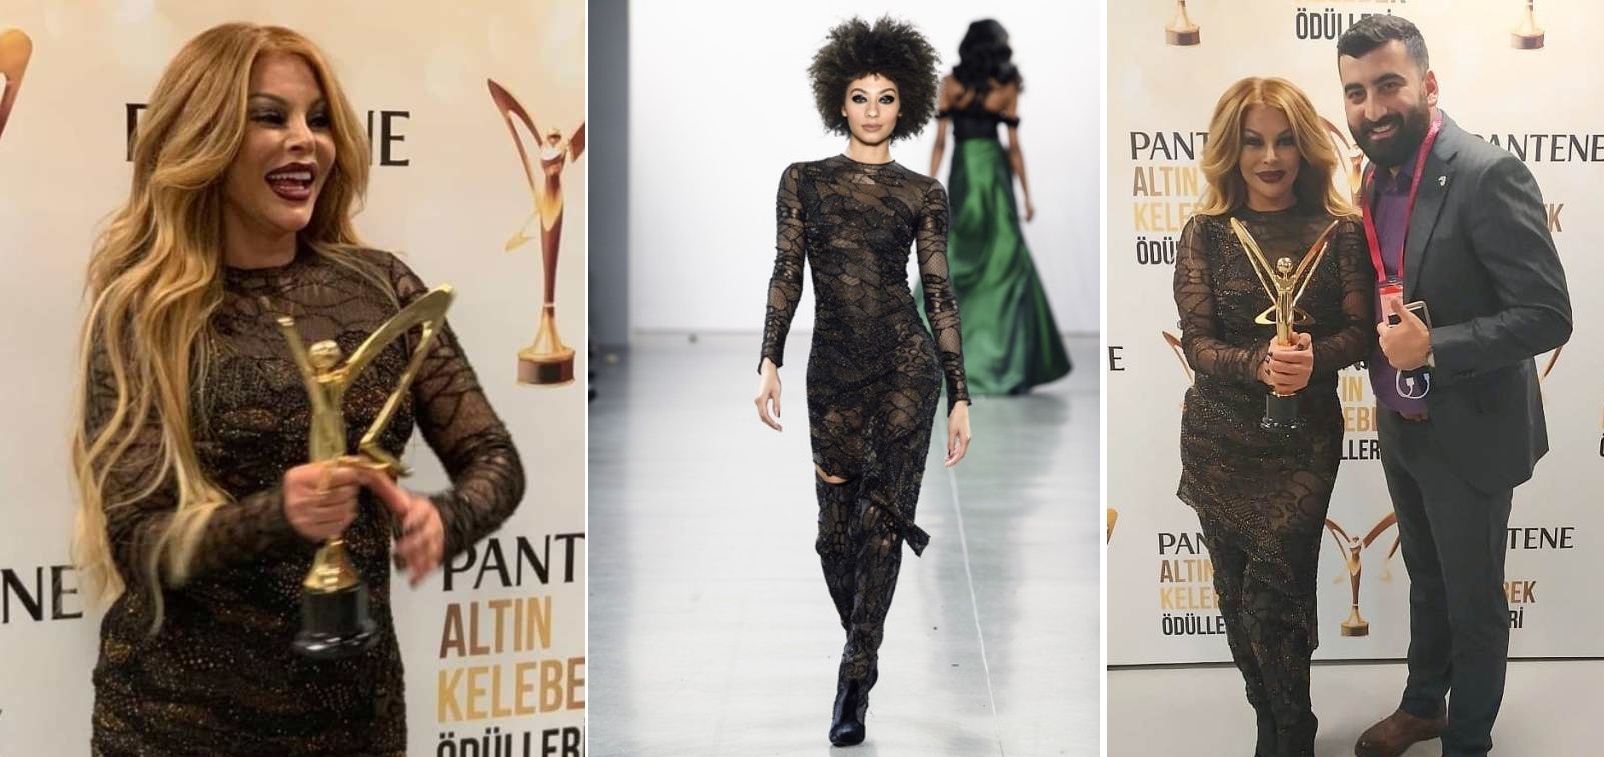 Азербайджанский дизайнер представил коллекцию «Эффект бабочки» на подиуме Недели моды в Нью-Йорке